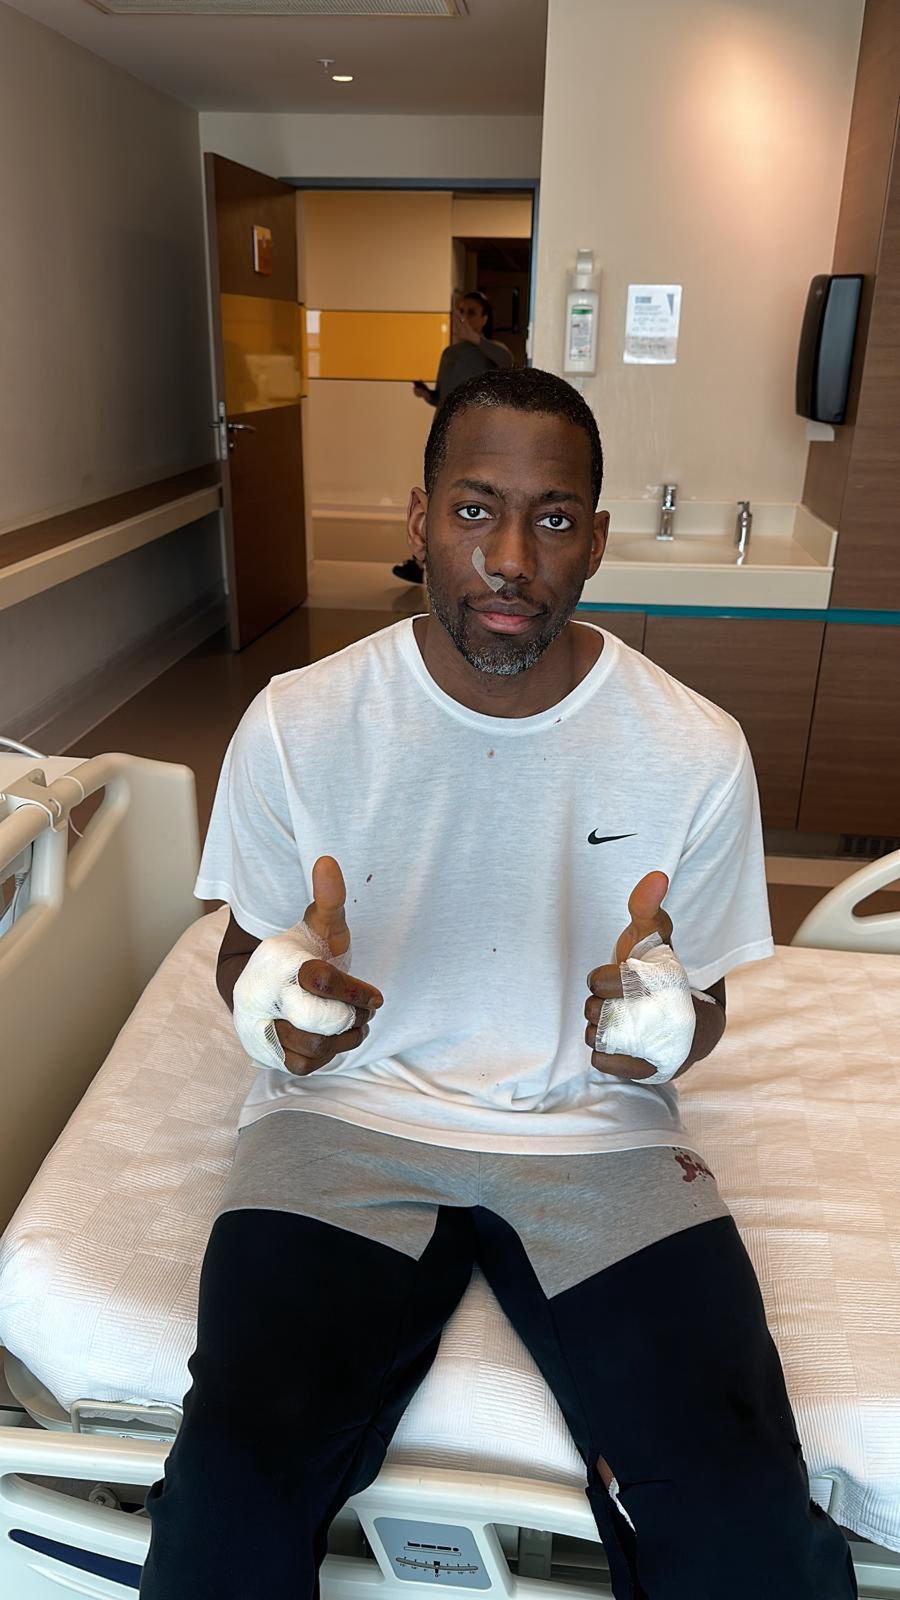 Koszykarz trafił do szpitala z urazami rąk